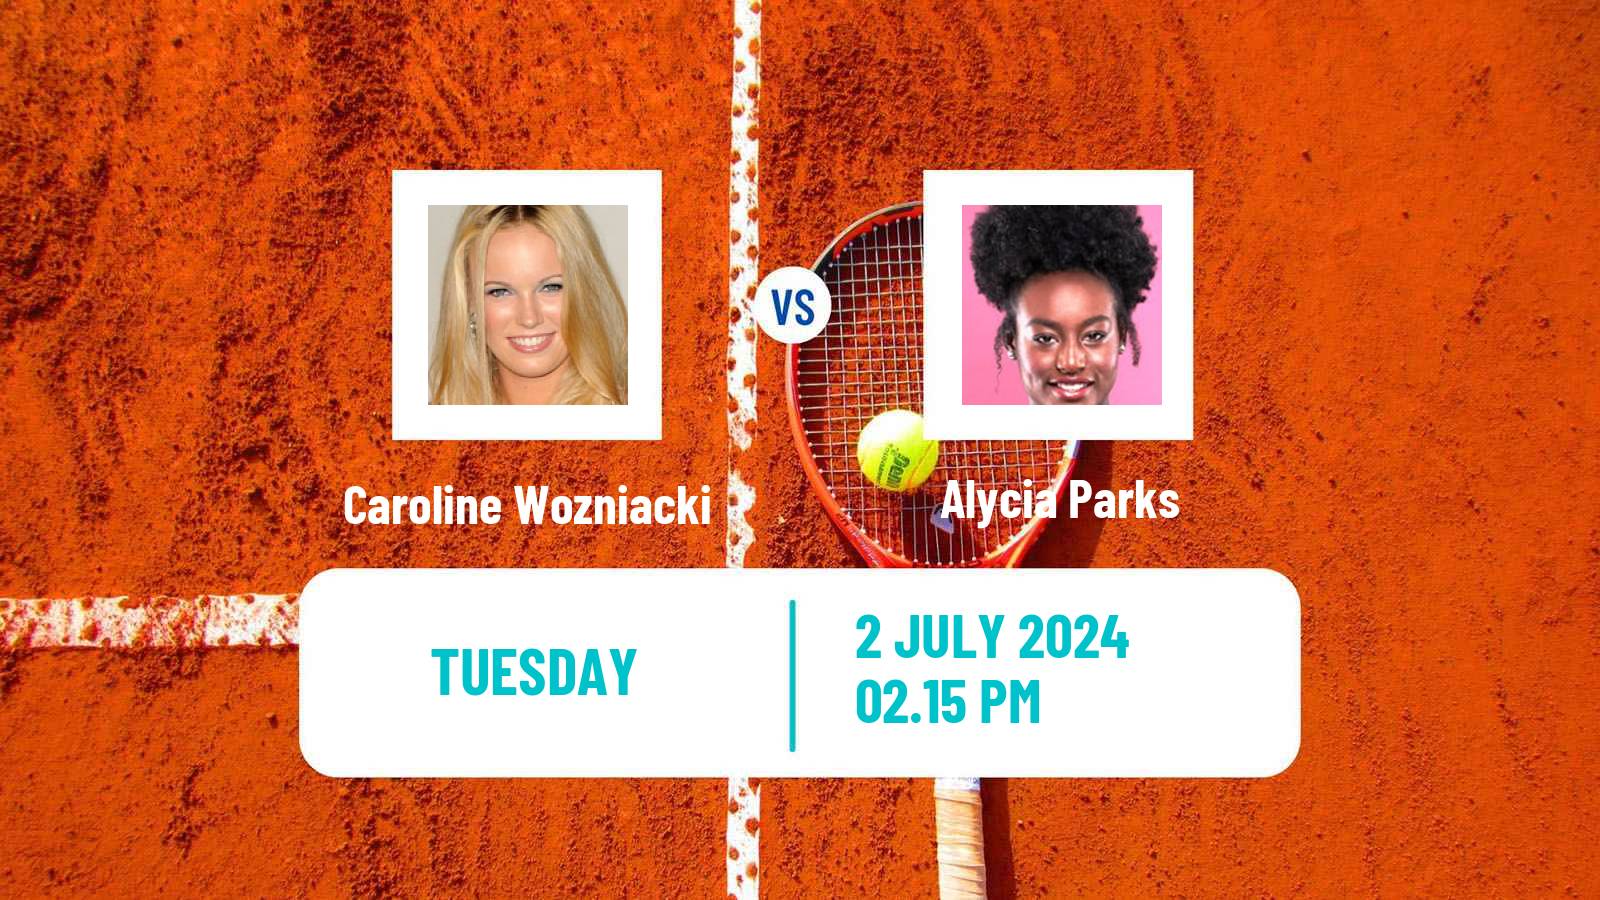 Tennis WTA Wimbledon Caroline Wozniacki - Alycia Parks